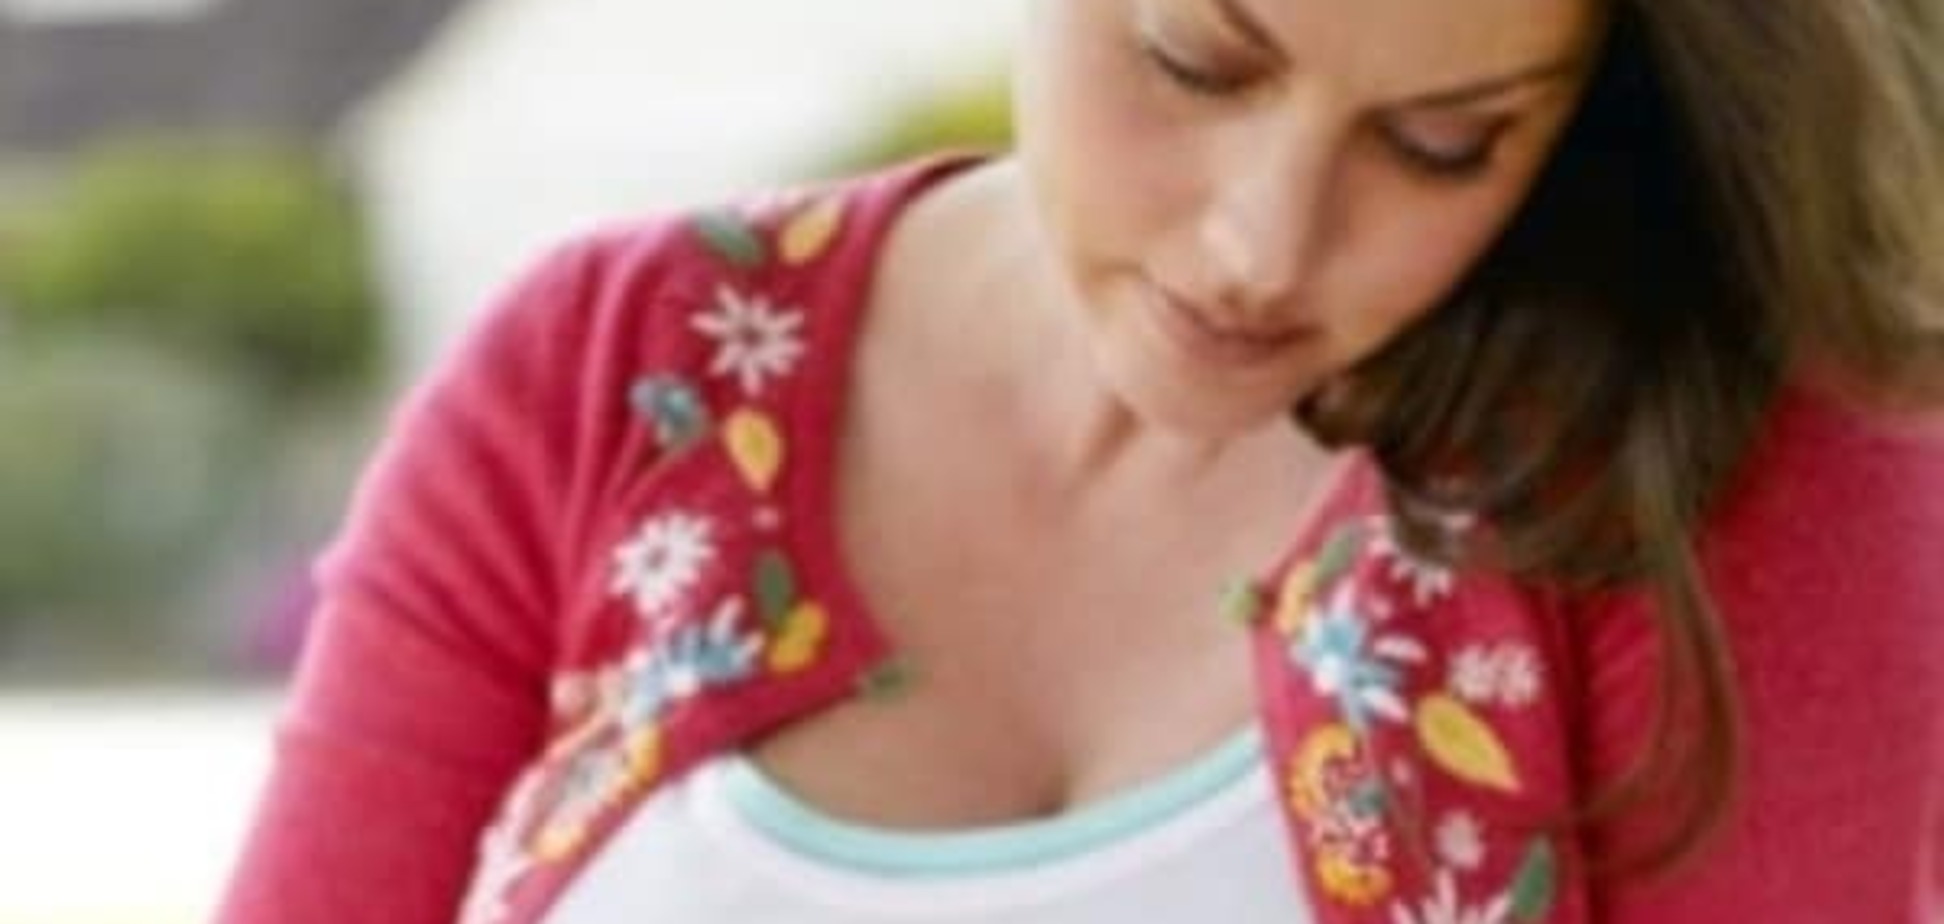 9 неожиданных (но вполне естественных) эмоций во время беременности